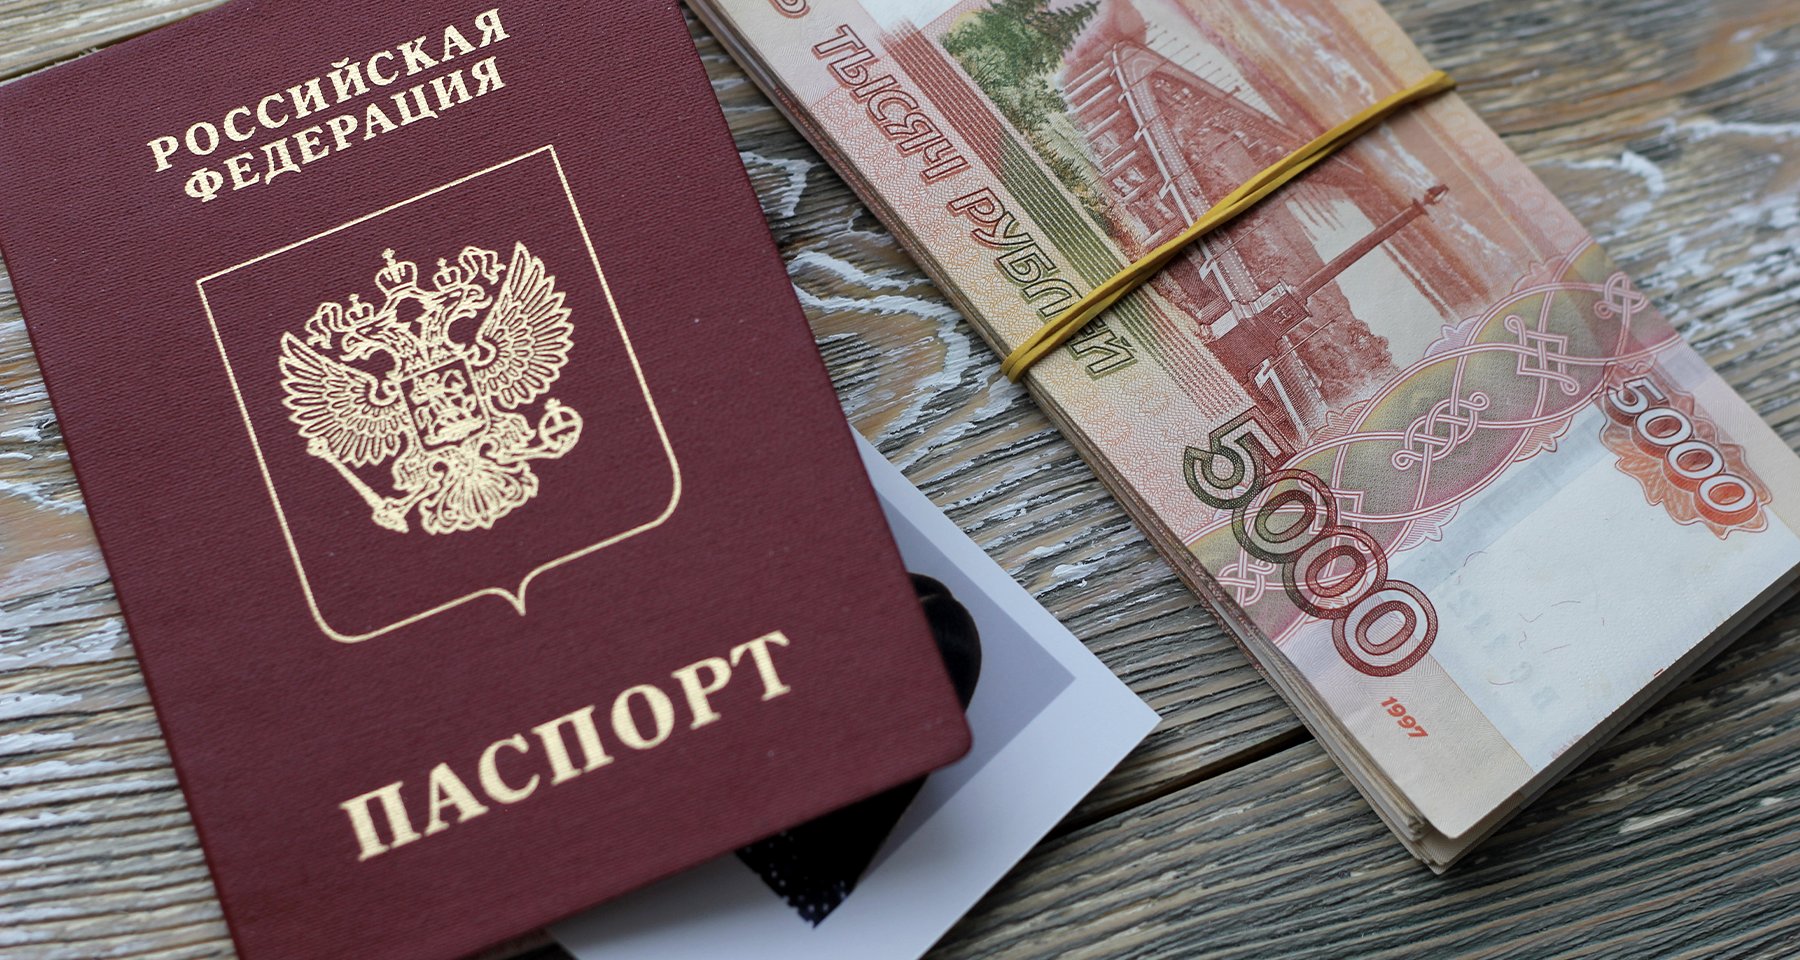 Кредит на чужой паспорт: какие схемы используют мошенники 